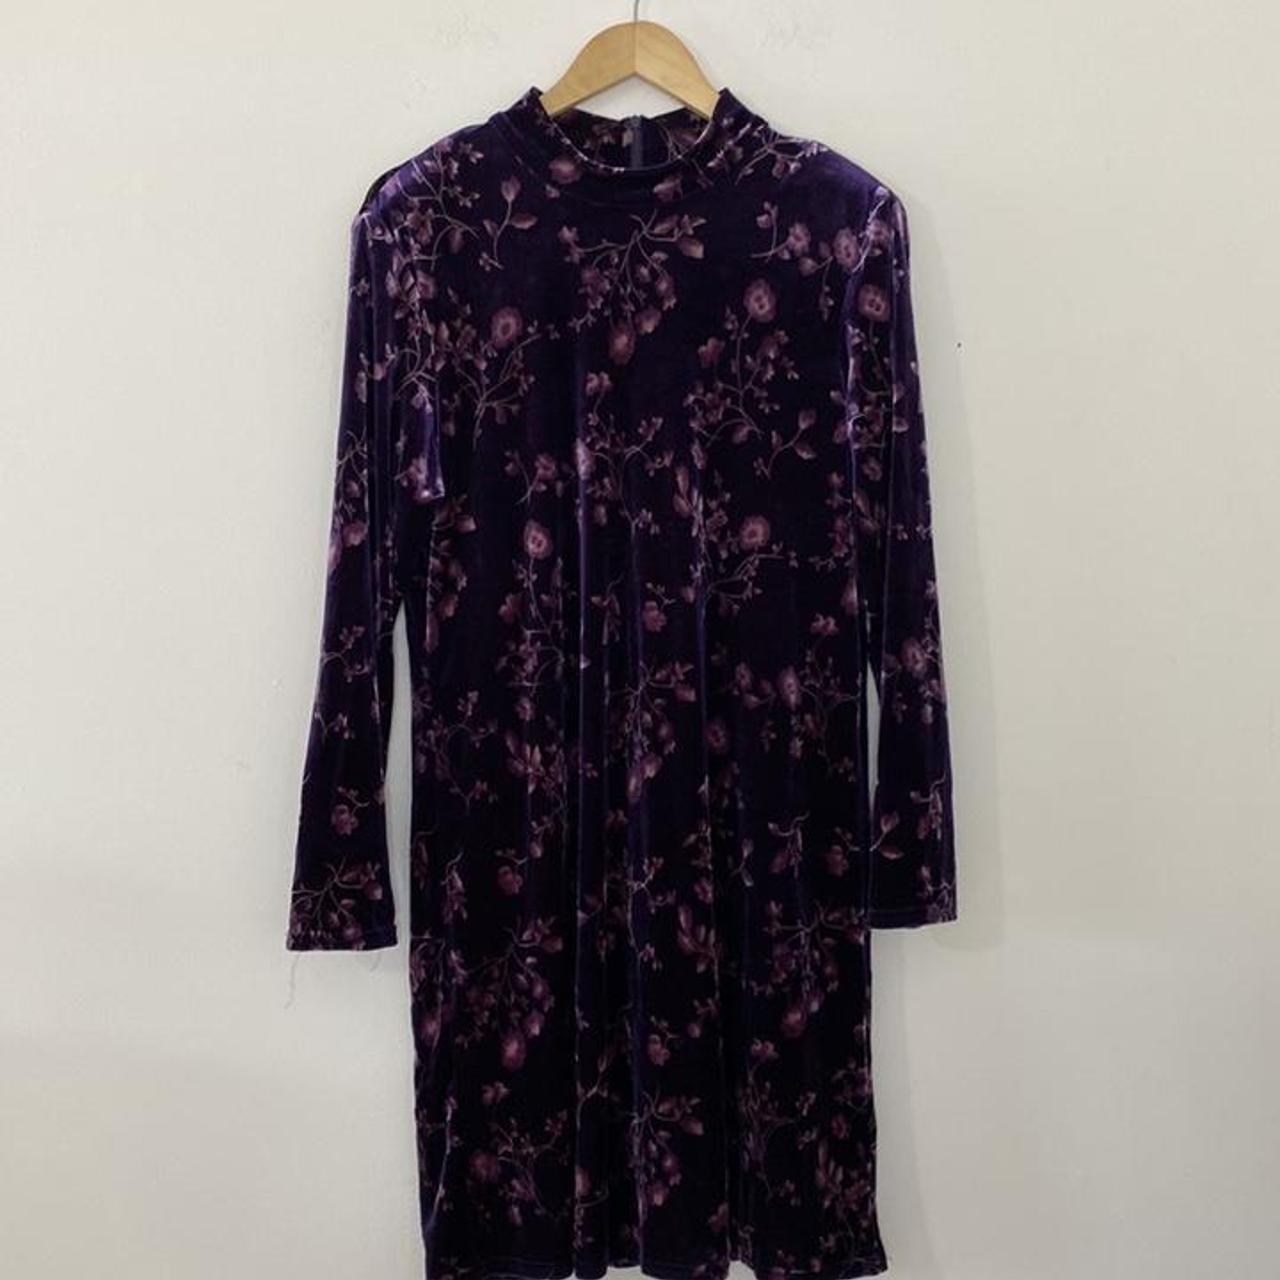 Vintage Velvet Dress Purple Floral Mock Neck Long... - Depop